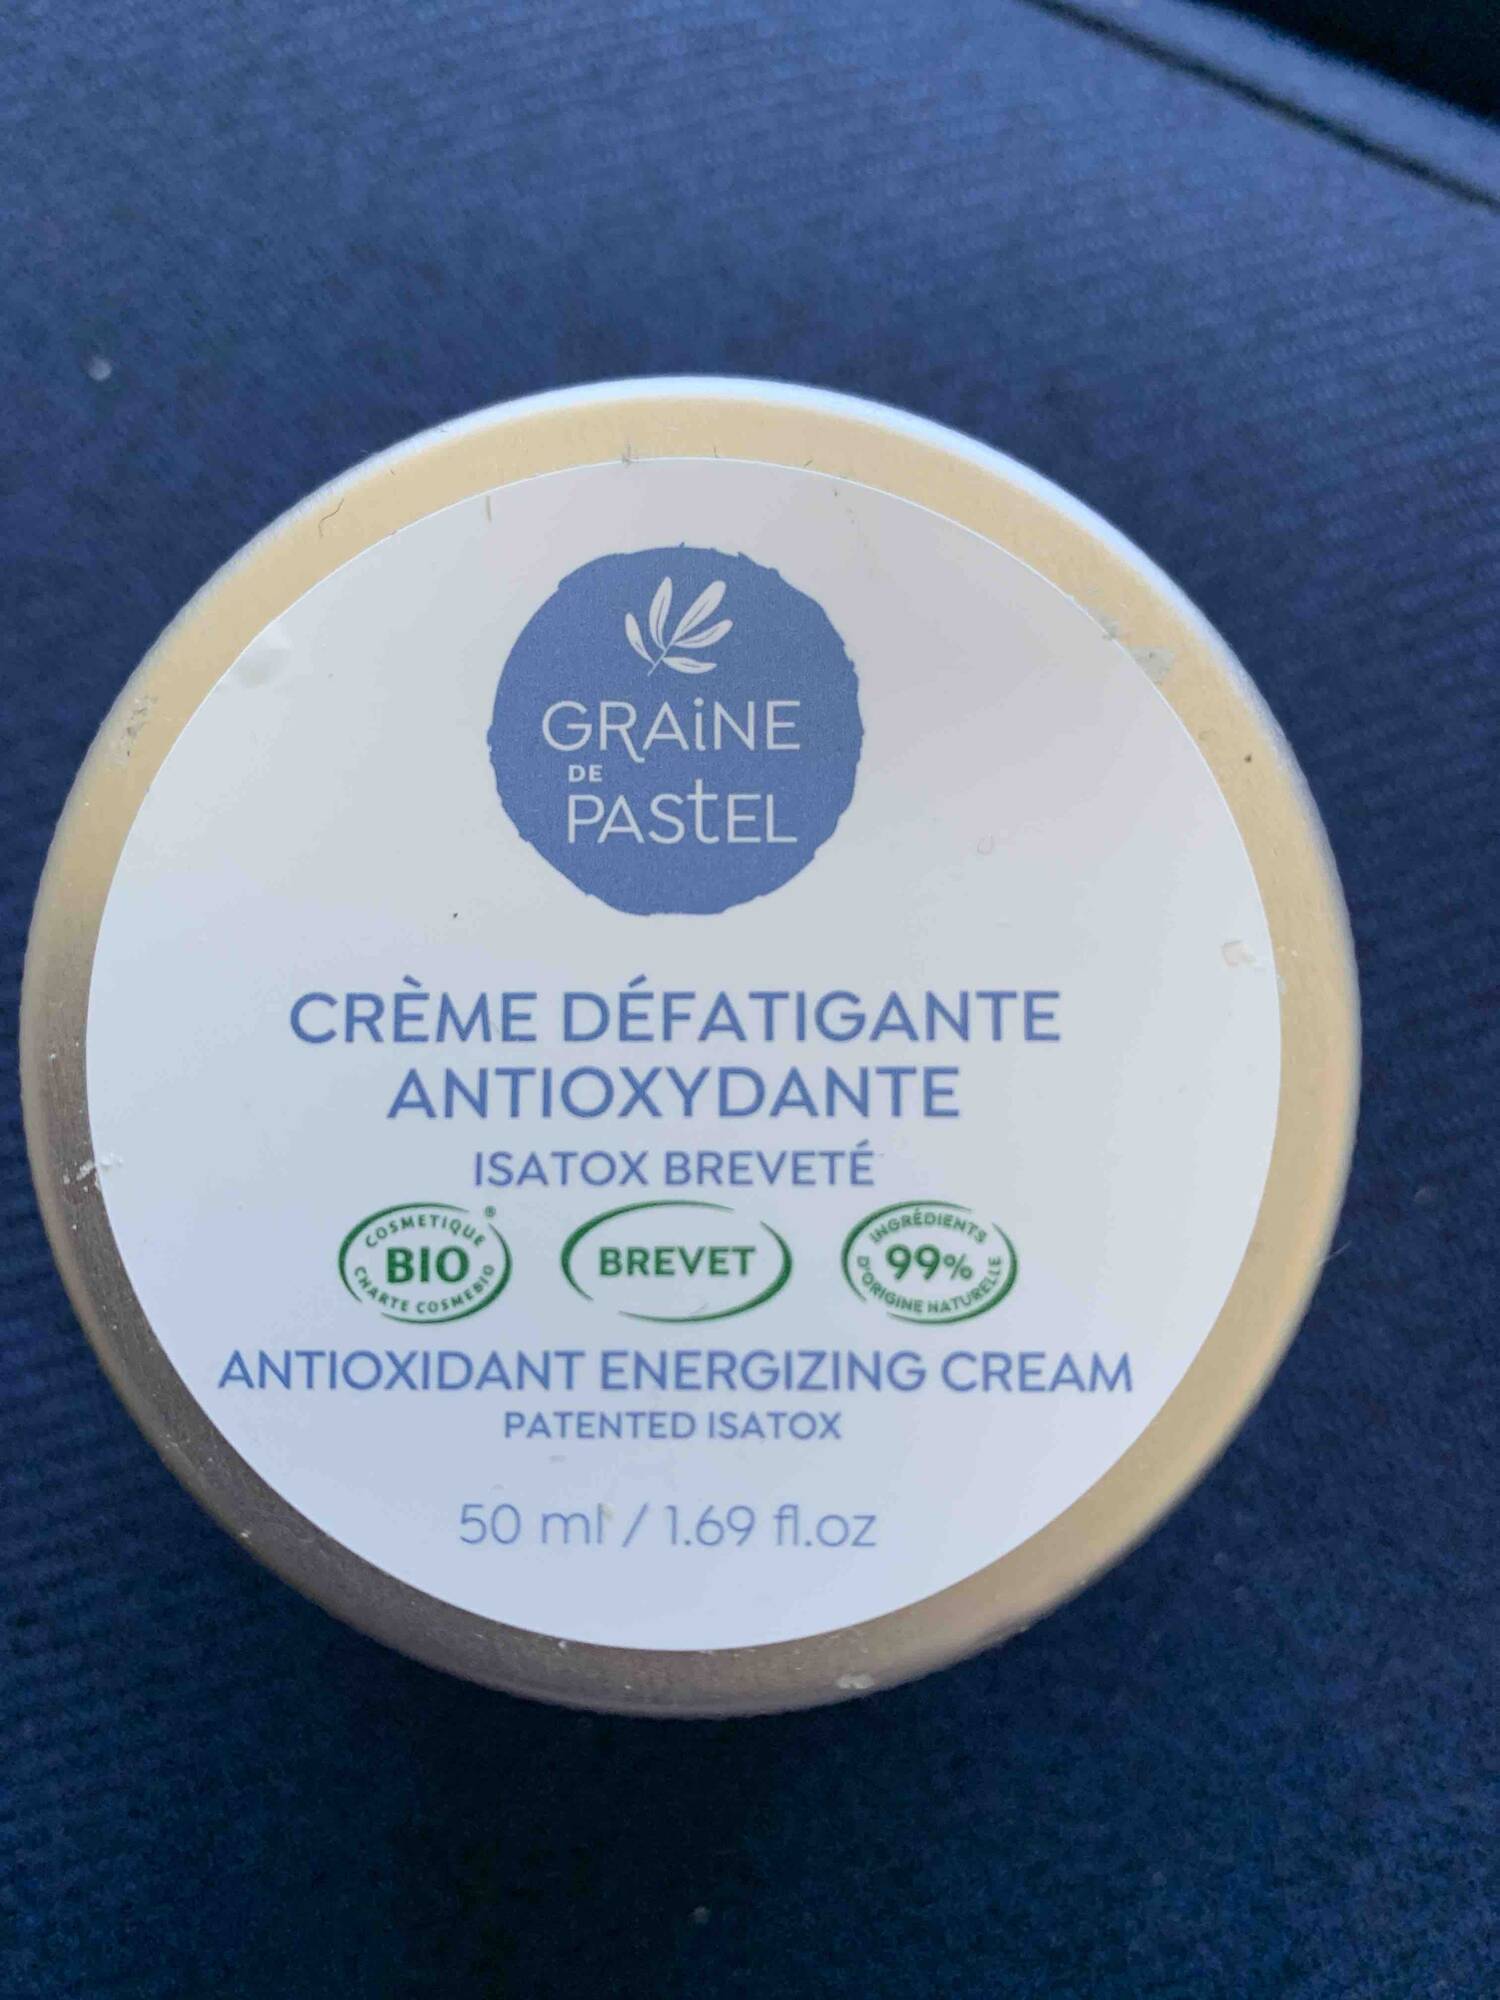 GRAINE DE PASTEL - Antioxydante - Crème défatigante